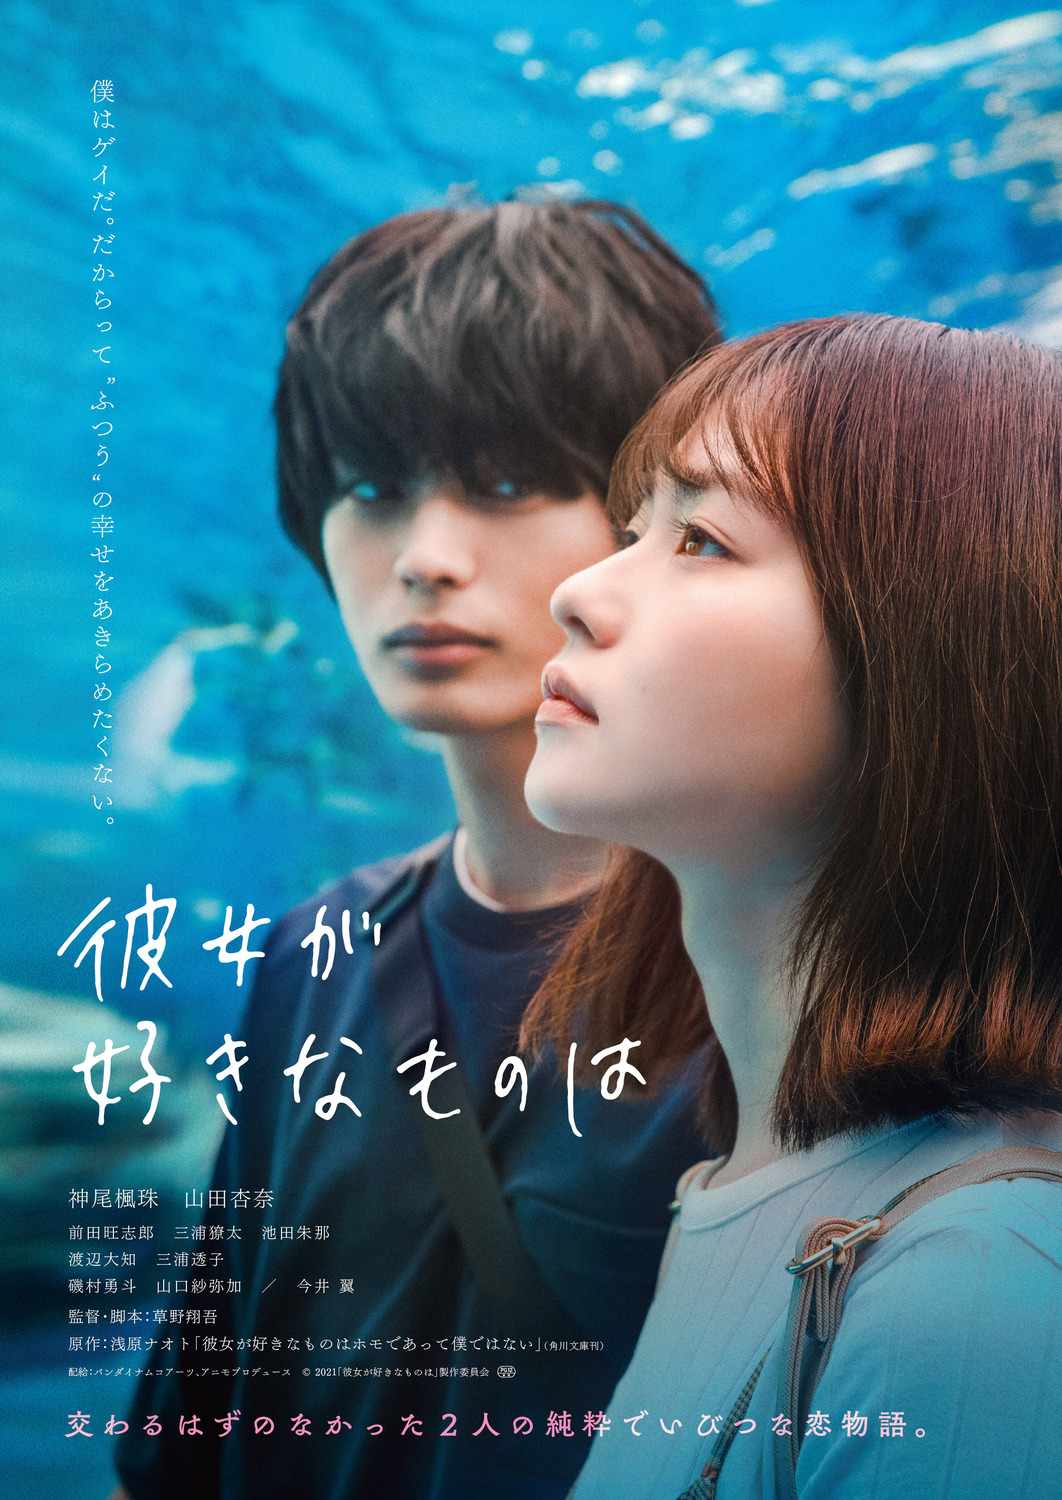 Extra Large Movie Poster Image for Kanojo no sukinamonowa 